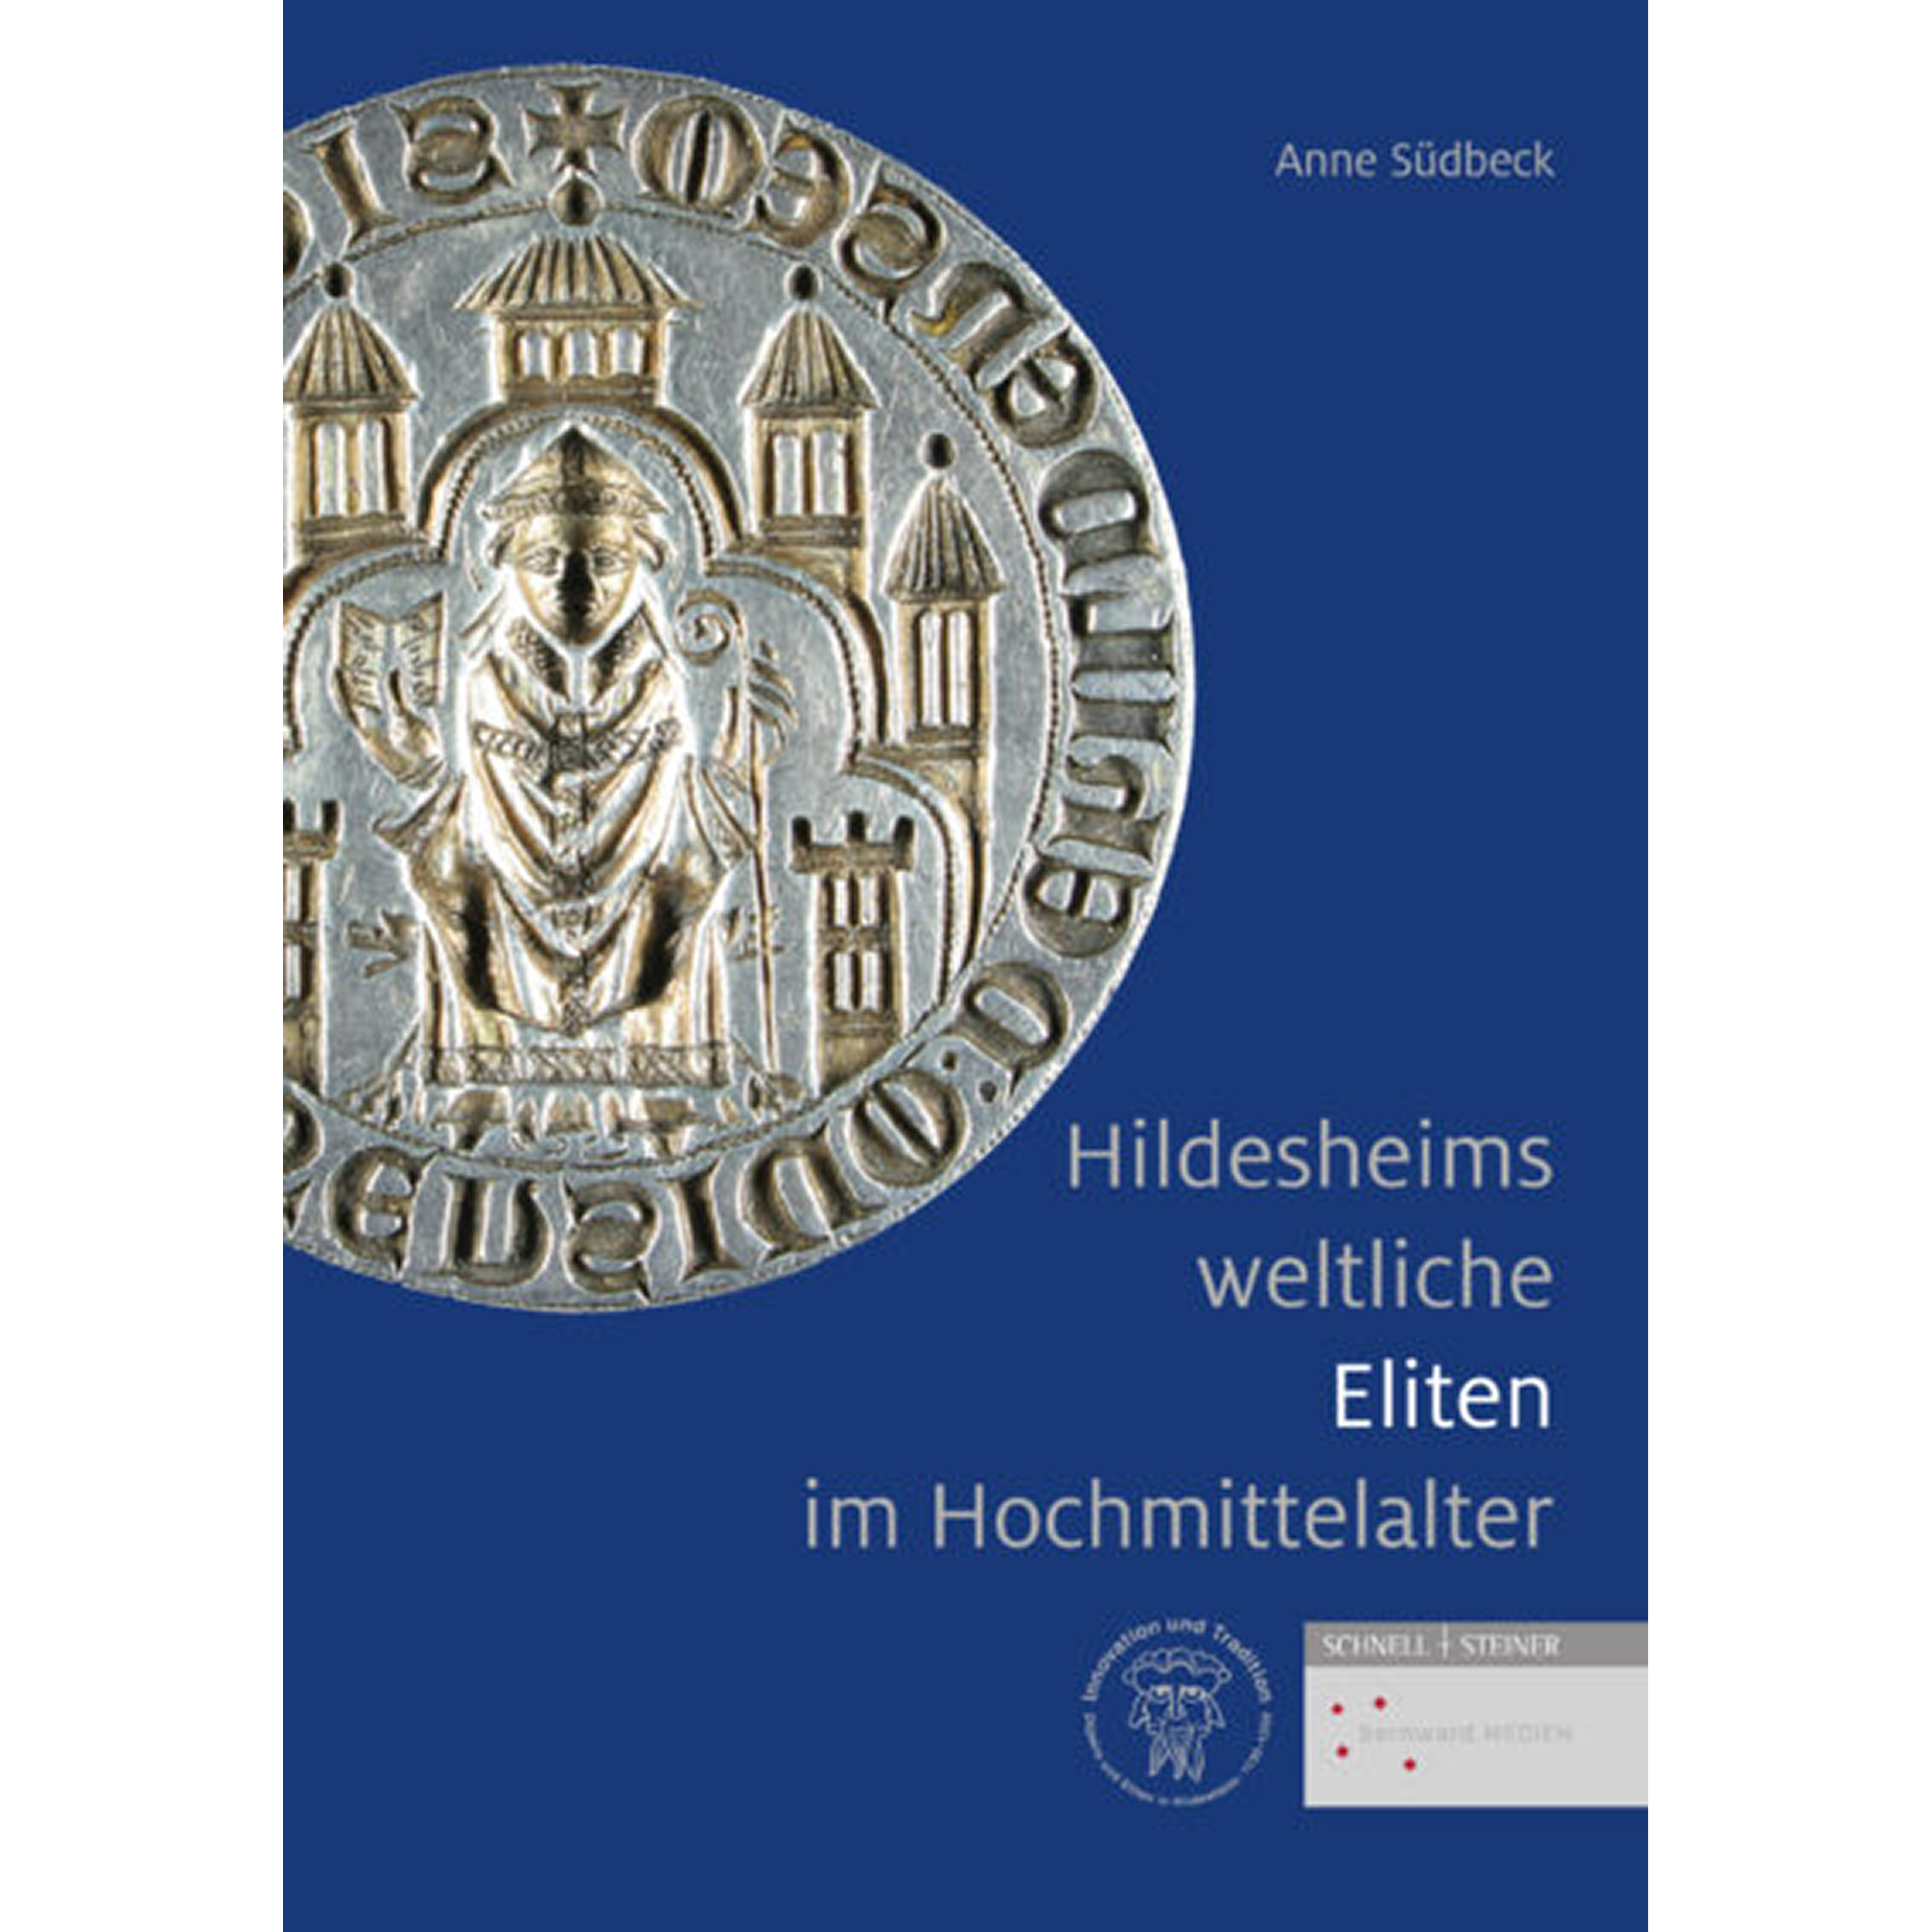 Hildesheims weltliche Eliten im Hochmittelalter